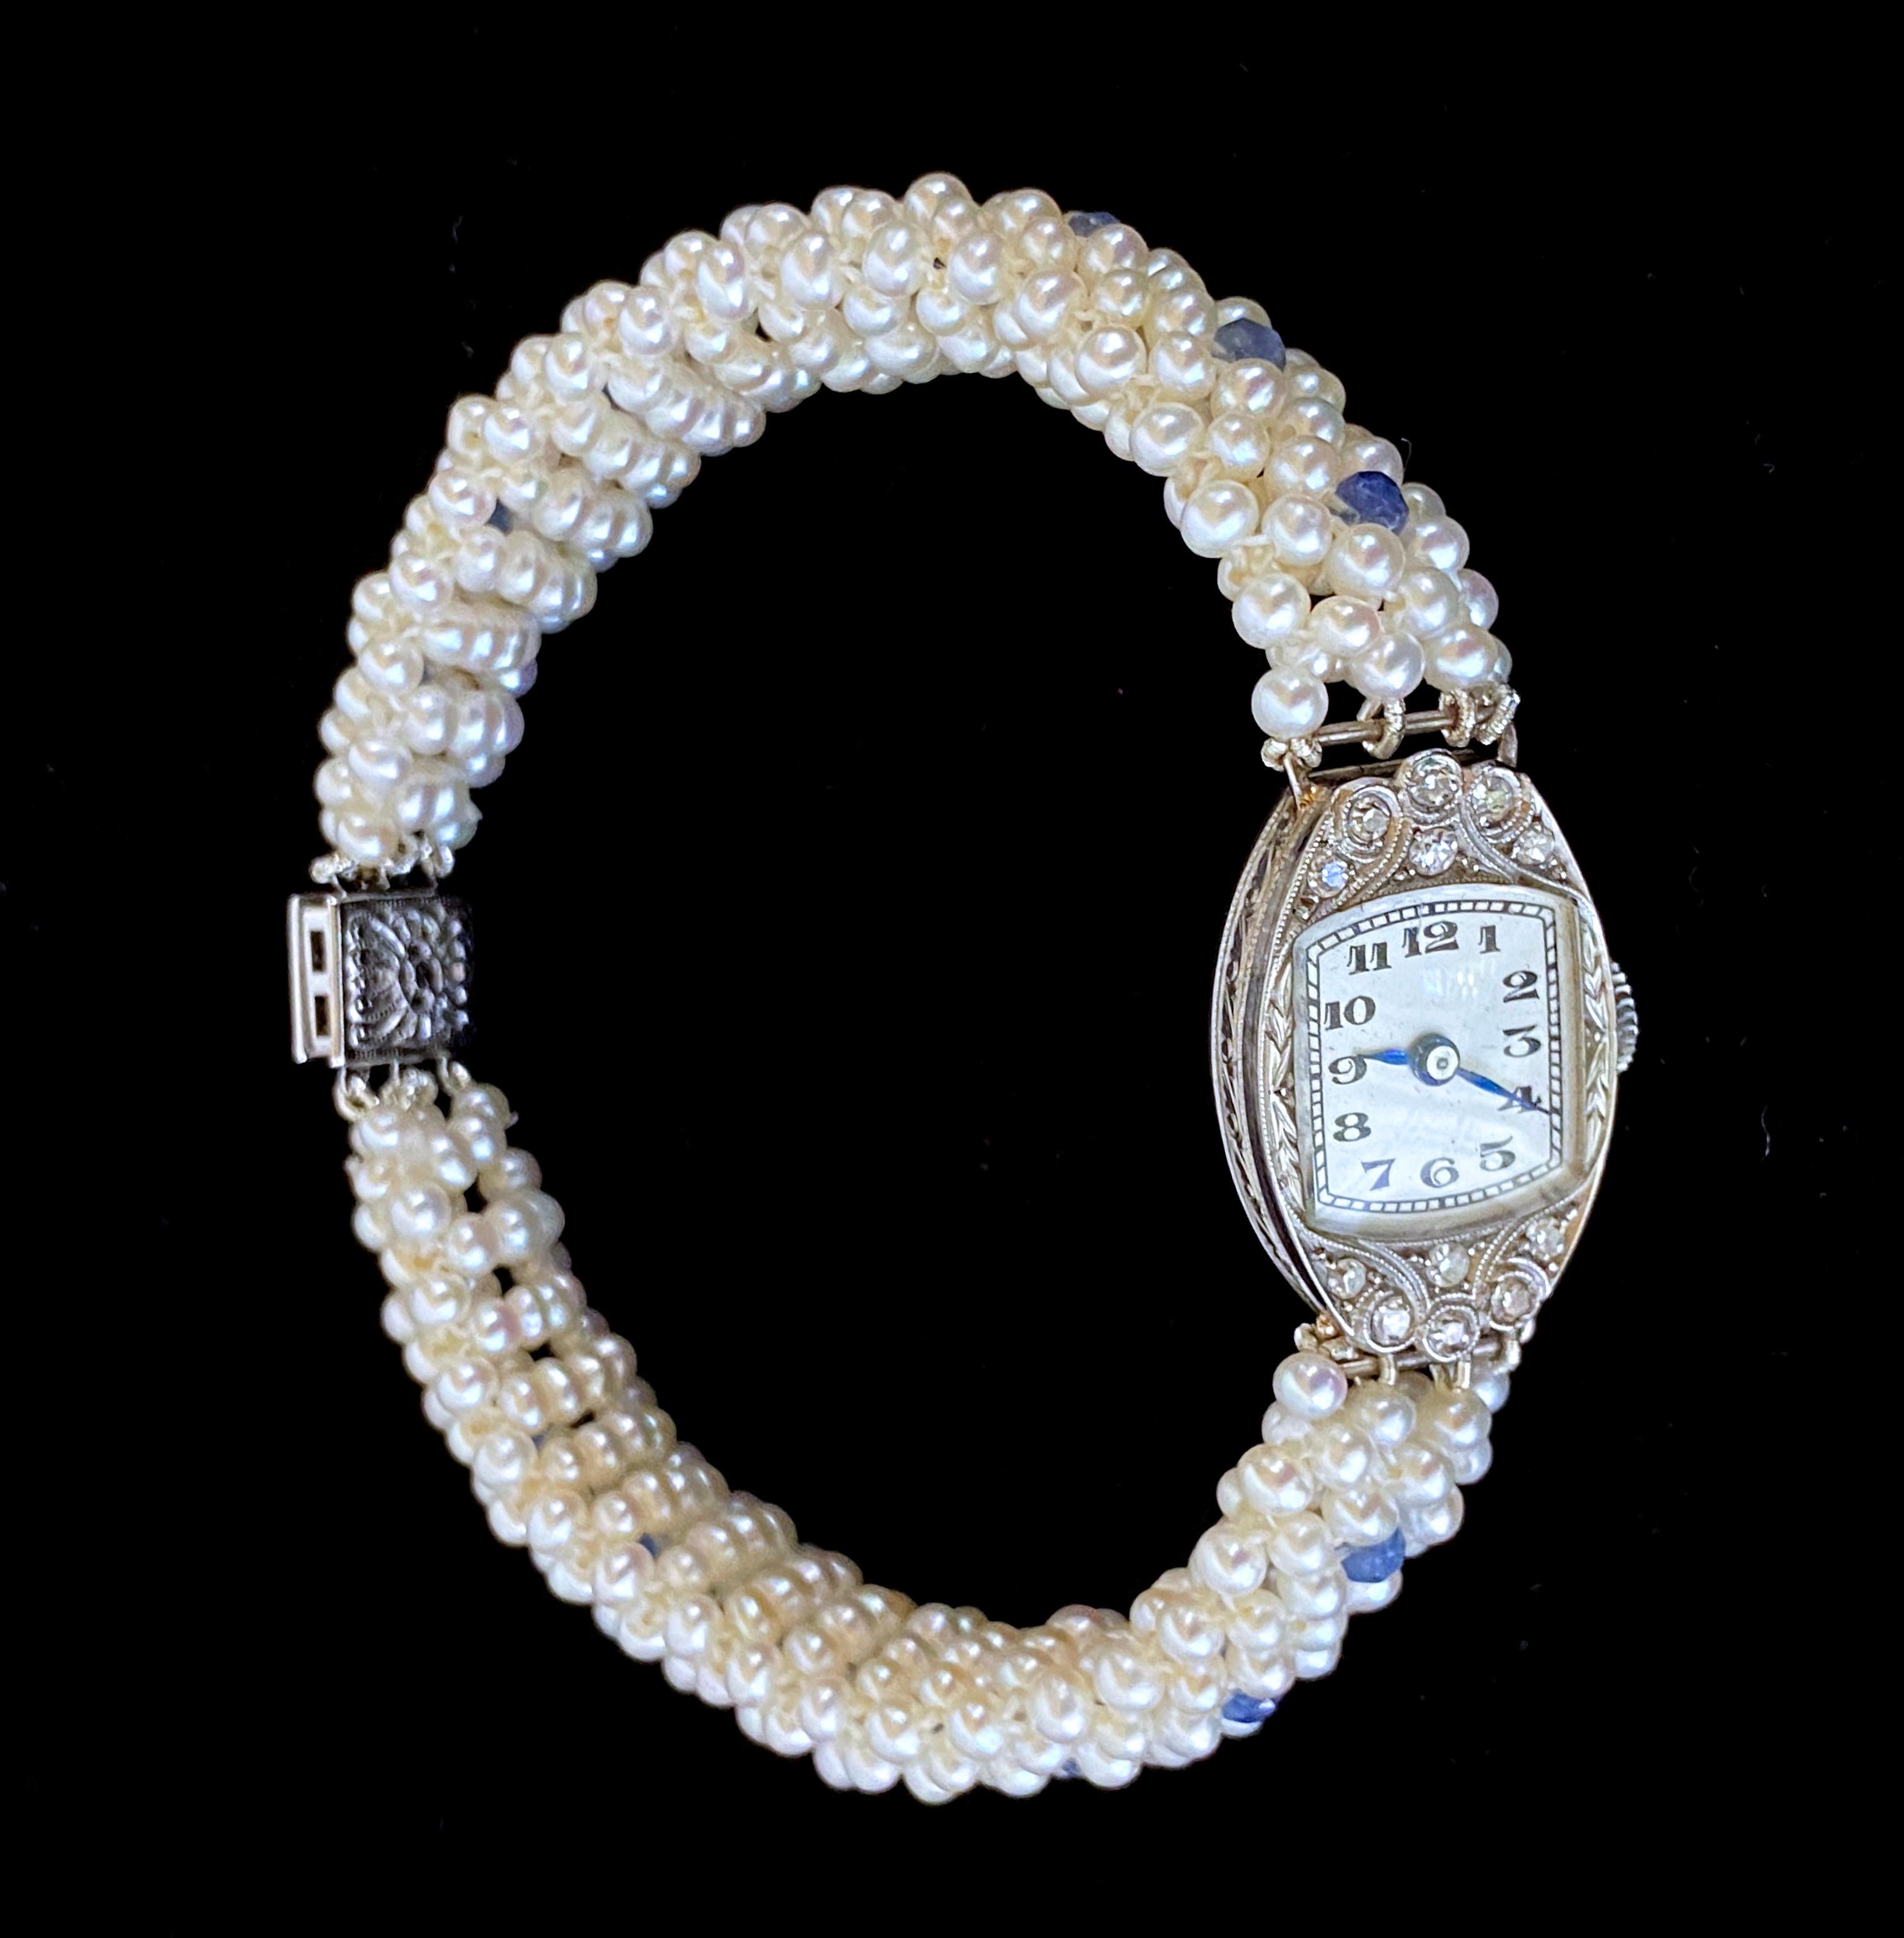 Magnifique pièce unique de Marina J. Une montre manuelle vintage en platine français sertie de diamants a été transformée en un magnifique bracelet de perles et de saphirs - marquée M.E.W. 8-1-55 au dos, comme le montrent les photos. Cette pièce